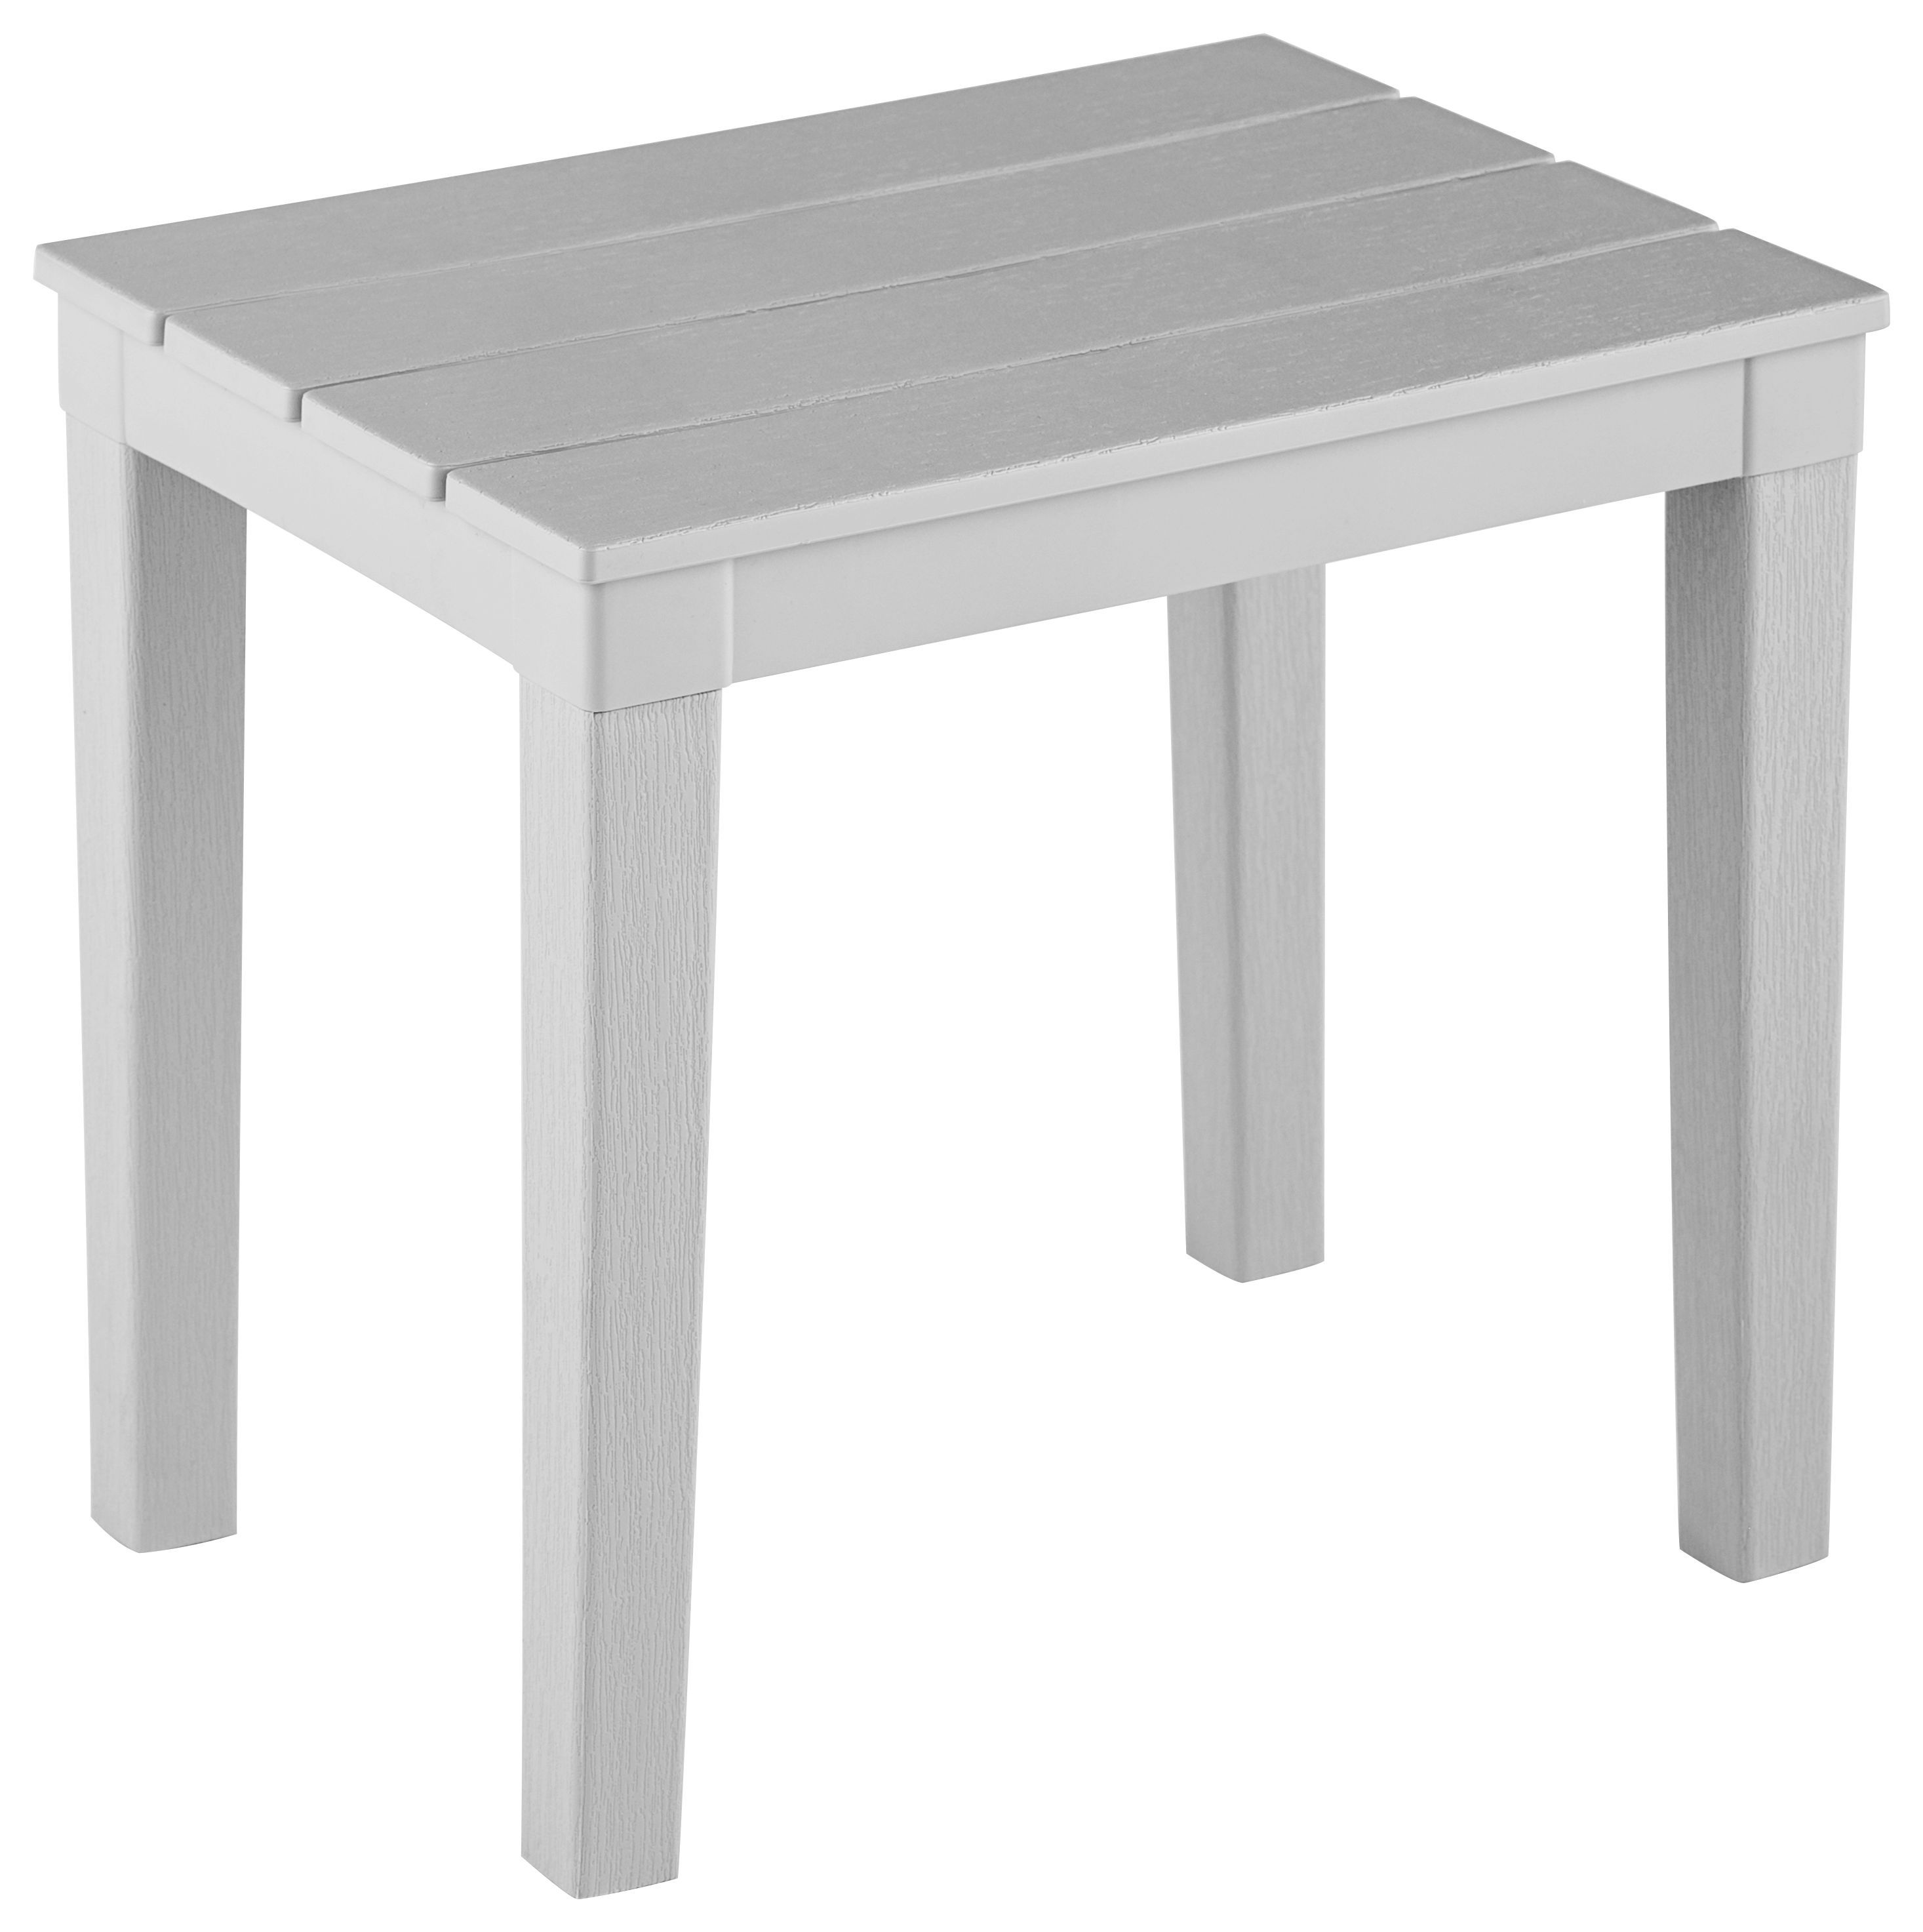 Стол садовый Элластик-пласт Прованс 80x80 см серый